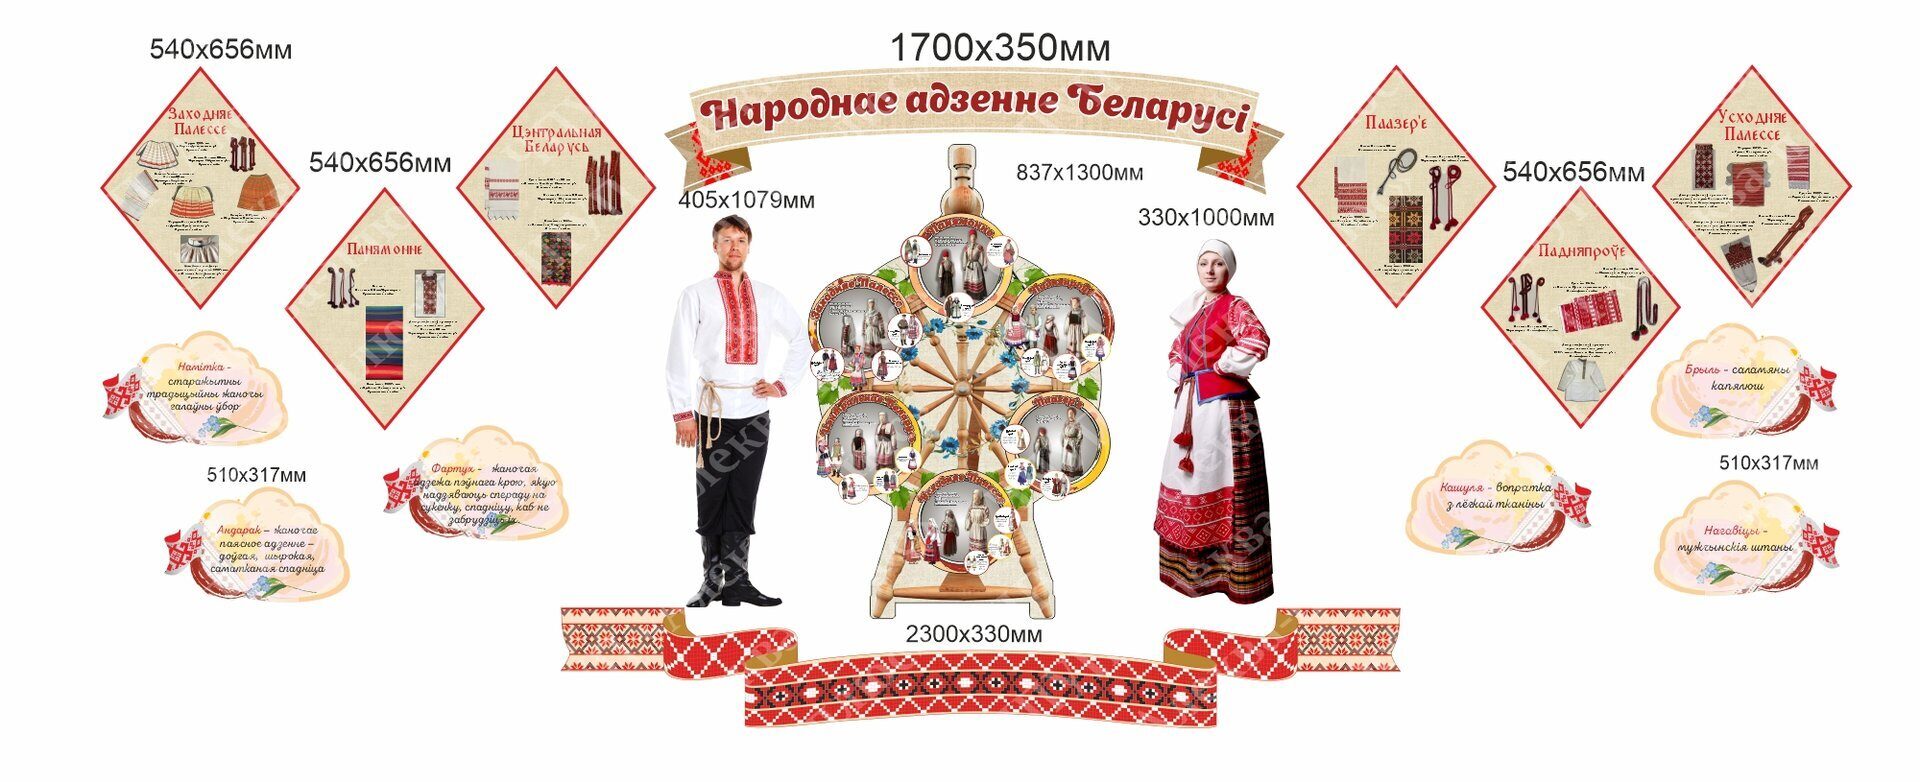 2303 Стендовый комплекс народные белорусские костюмы